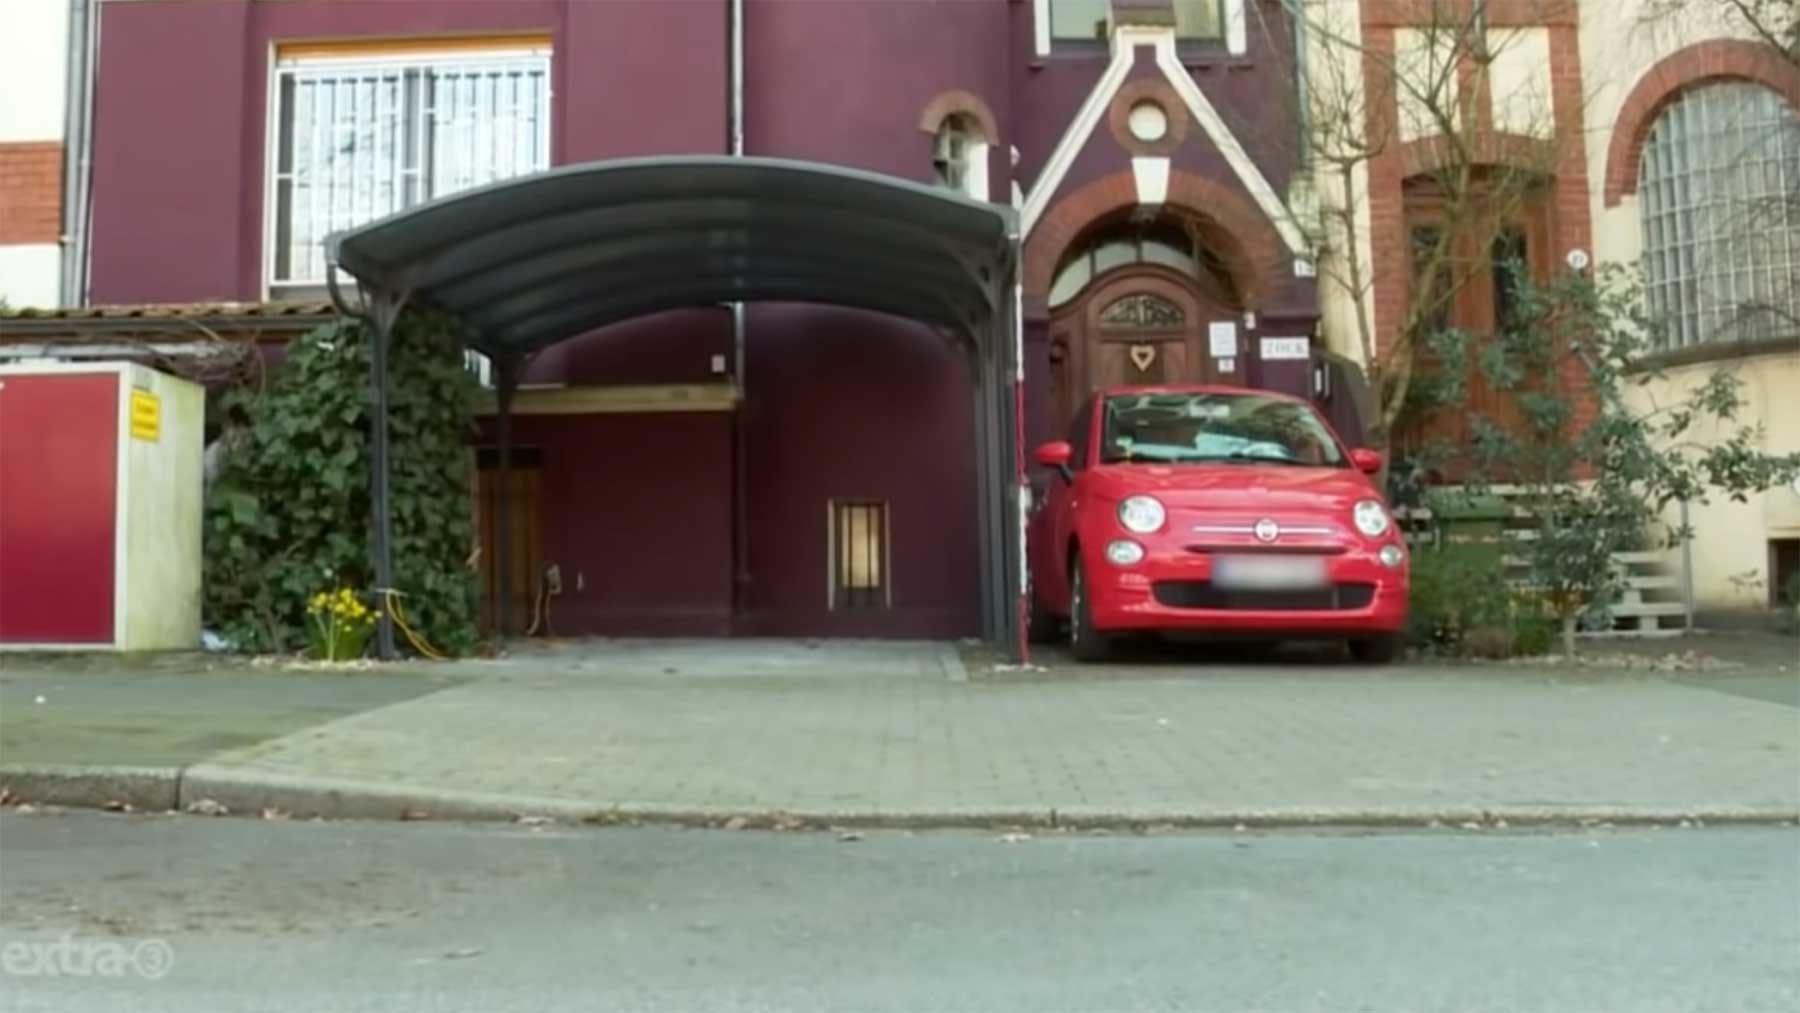 Realer Irrsinn: Kein Auto darf unter diesem Carport parken niemand-darf-unter-diesem-carport-parken 